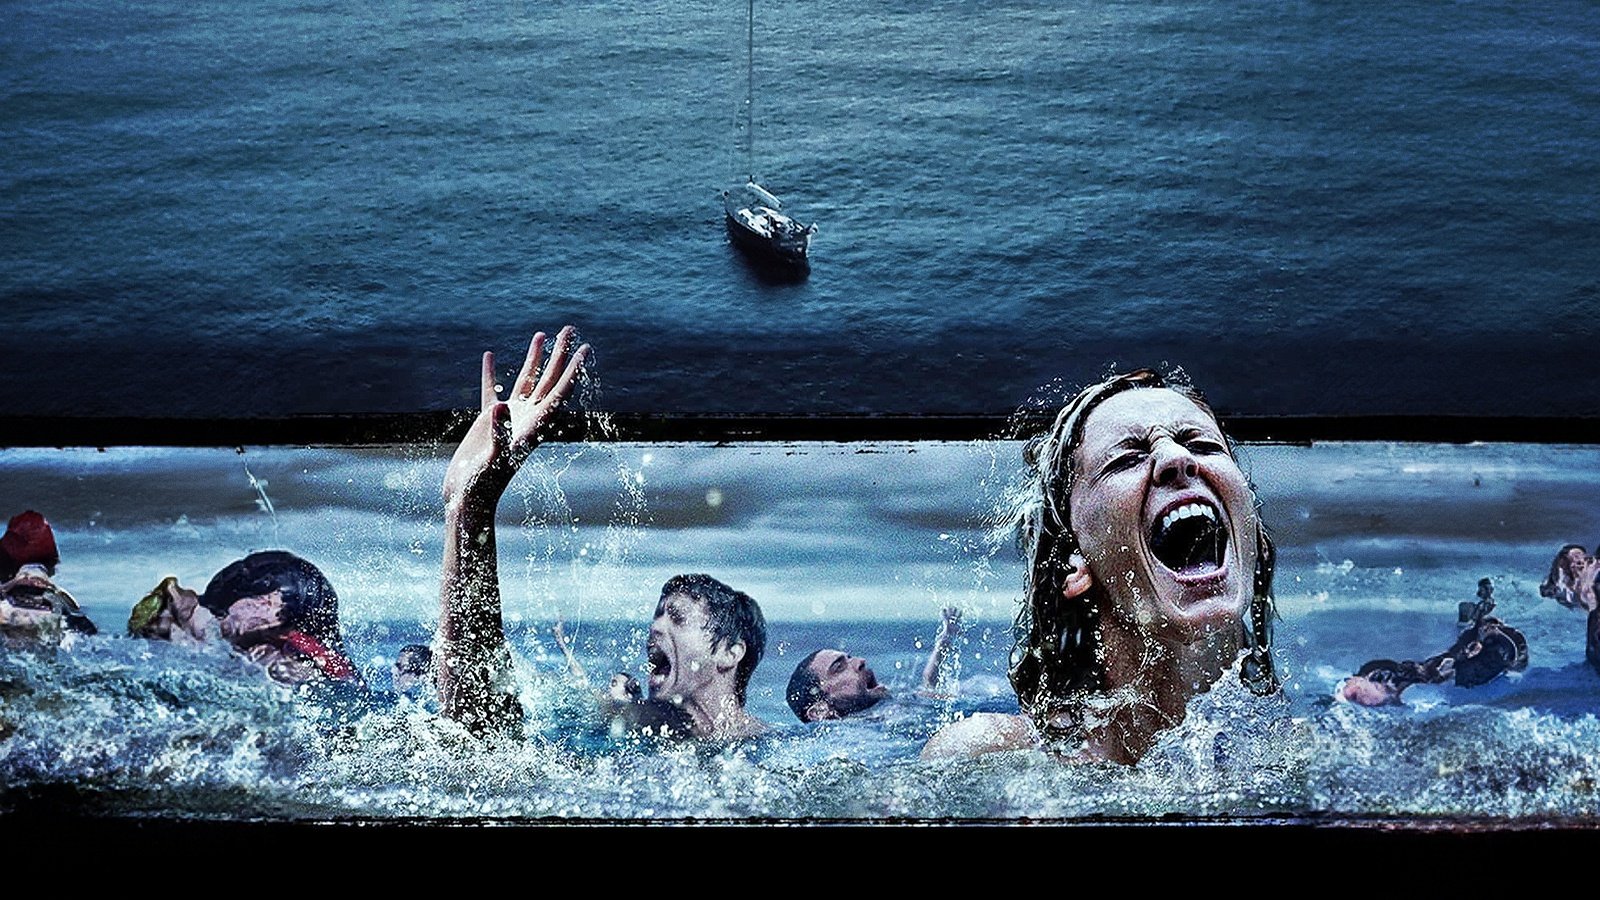 In alto mare, la recensione: su Prime Video un survival thriller che fa acqua